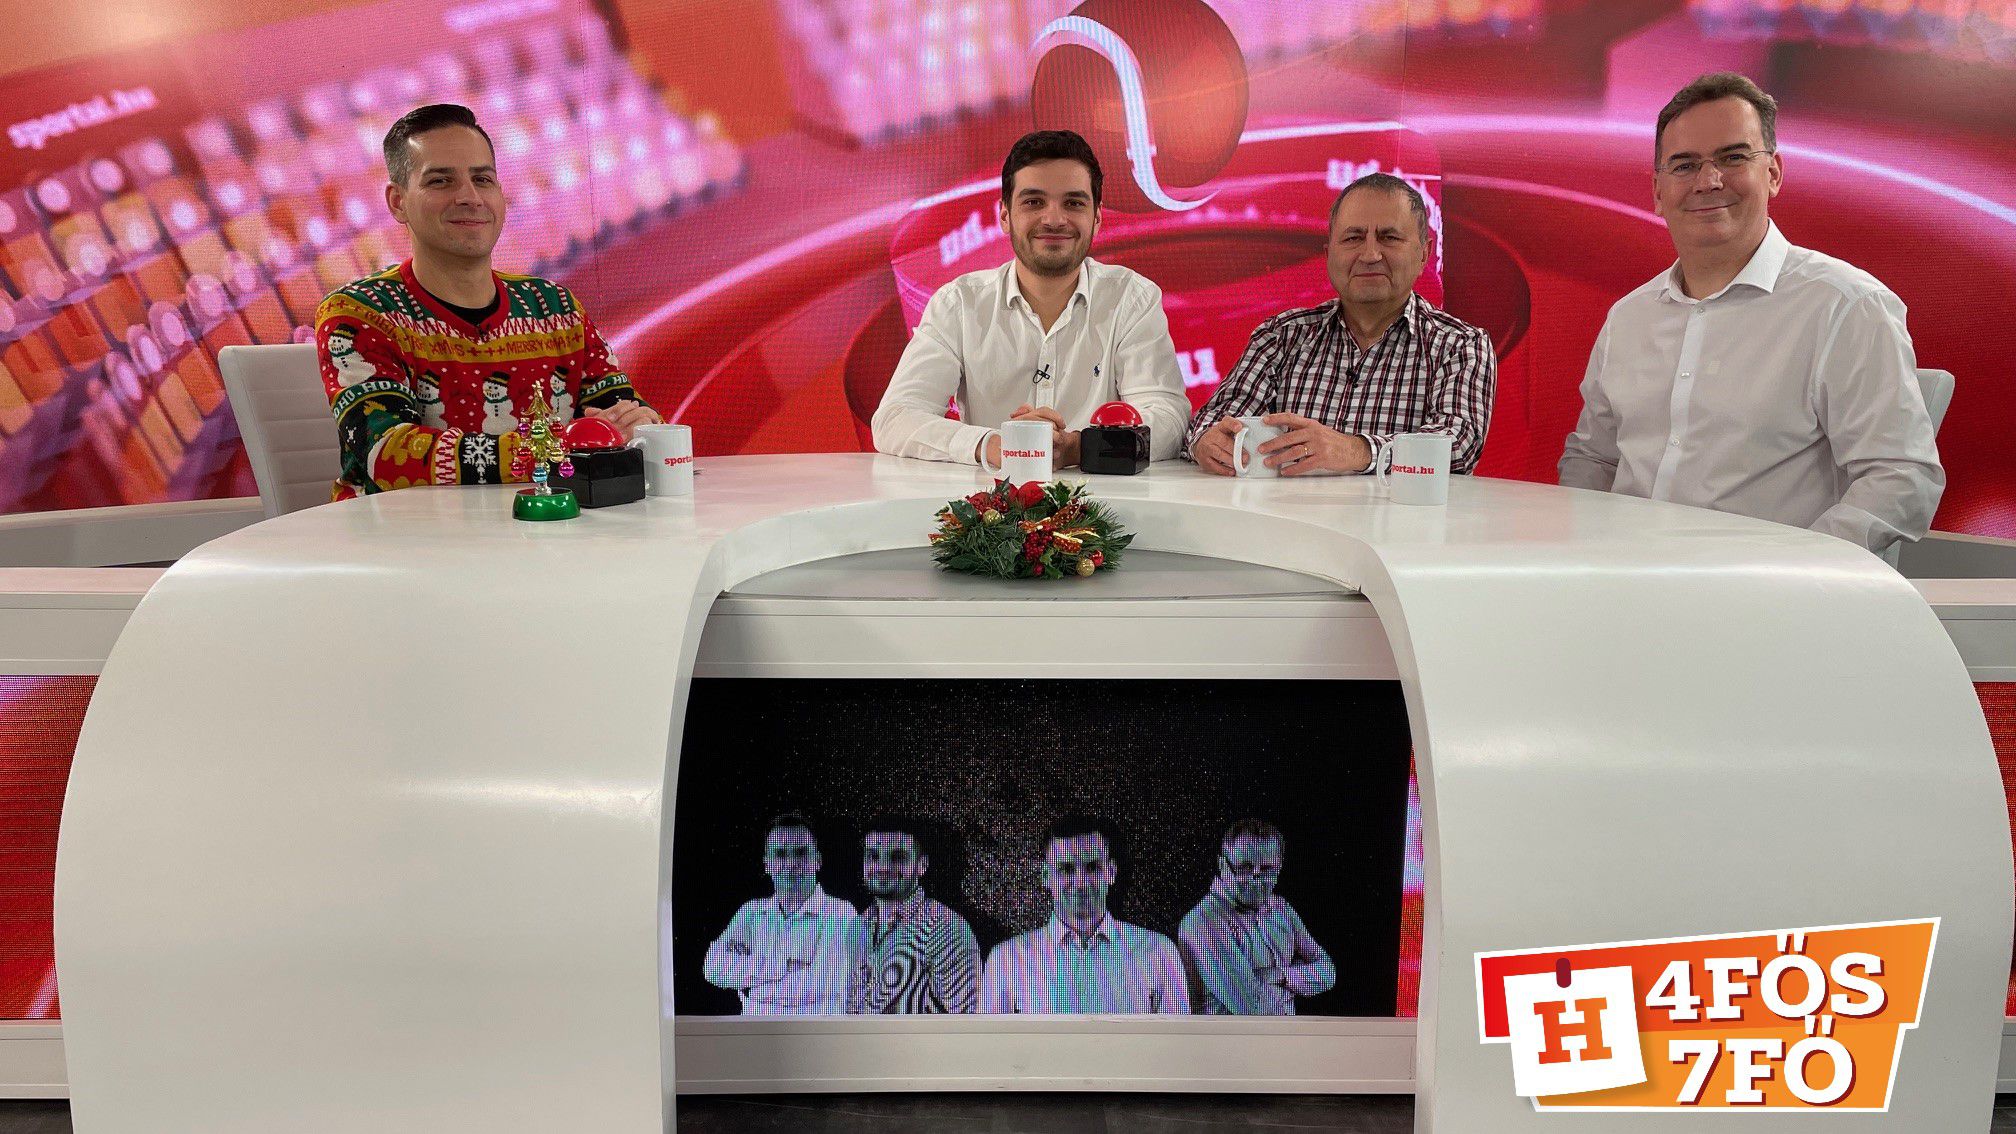 A Sportál Tv stúdiójában: Cselleng Ádám, Cseh Benjámin, Szekeres Tamás és Kecskés István